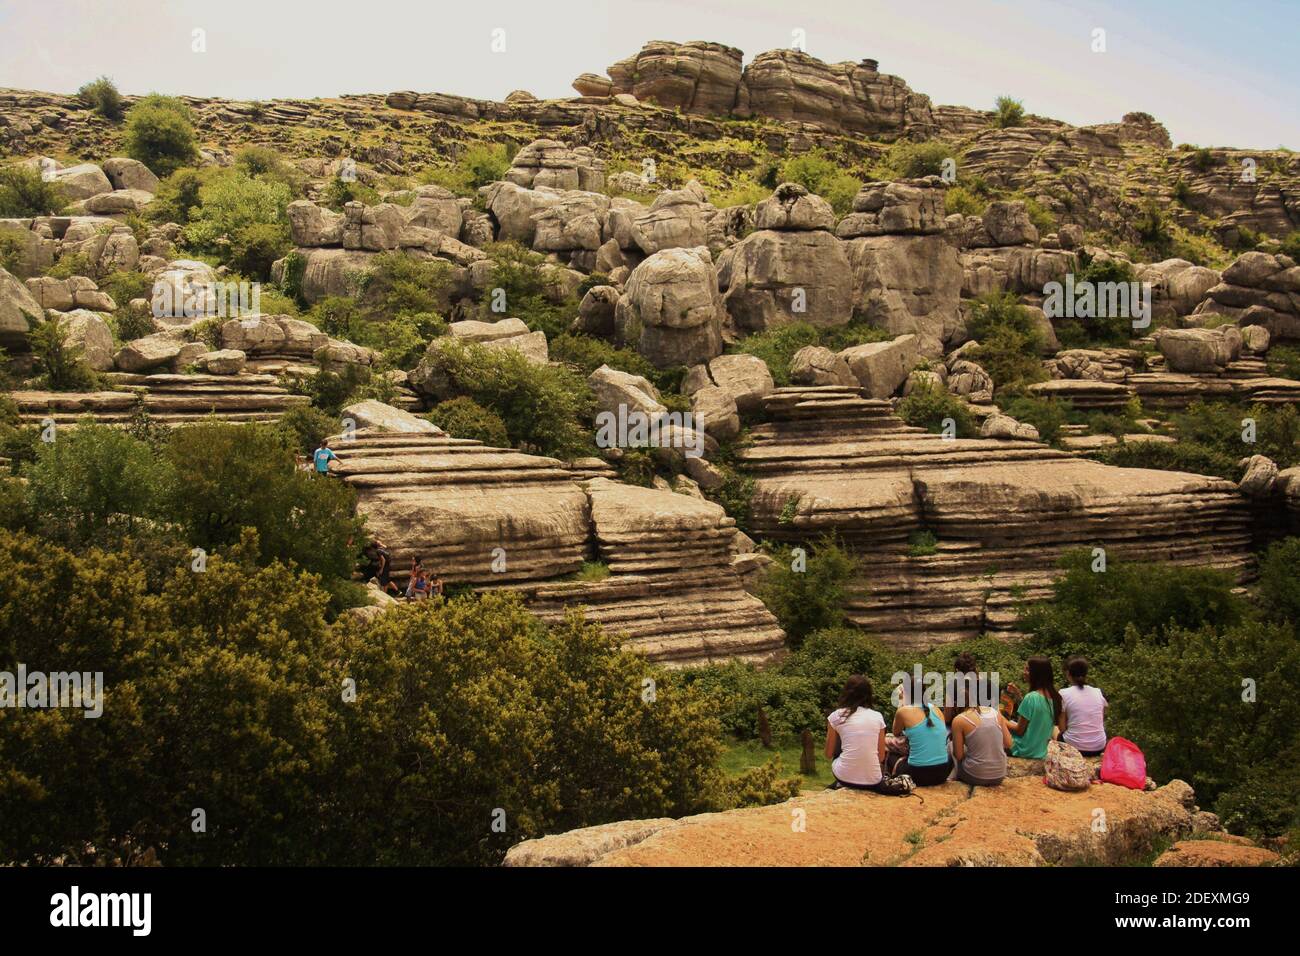 Antequera, España - 8 de mayo de 2015: Paisaje kárstico prehistórico de el Torcal de Antequera con formación rocosa admirada por las escolares en el viaje de campo Foto de stock